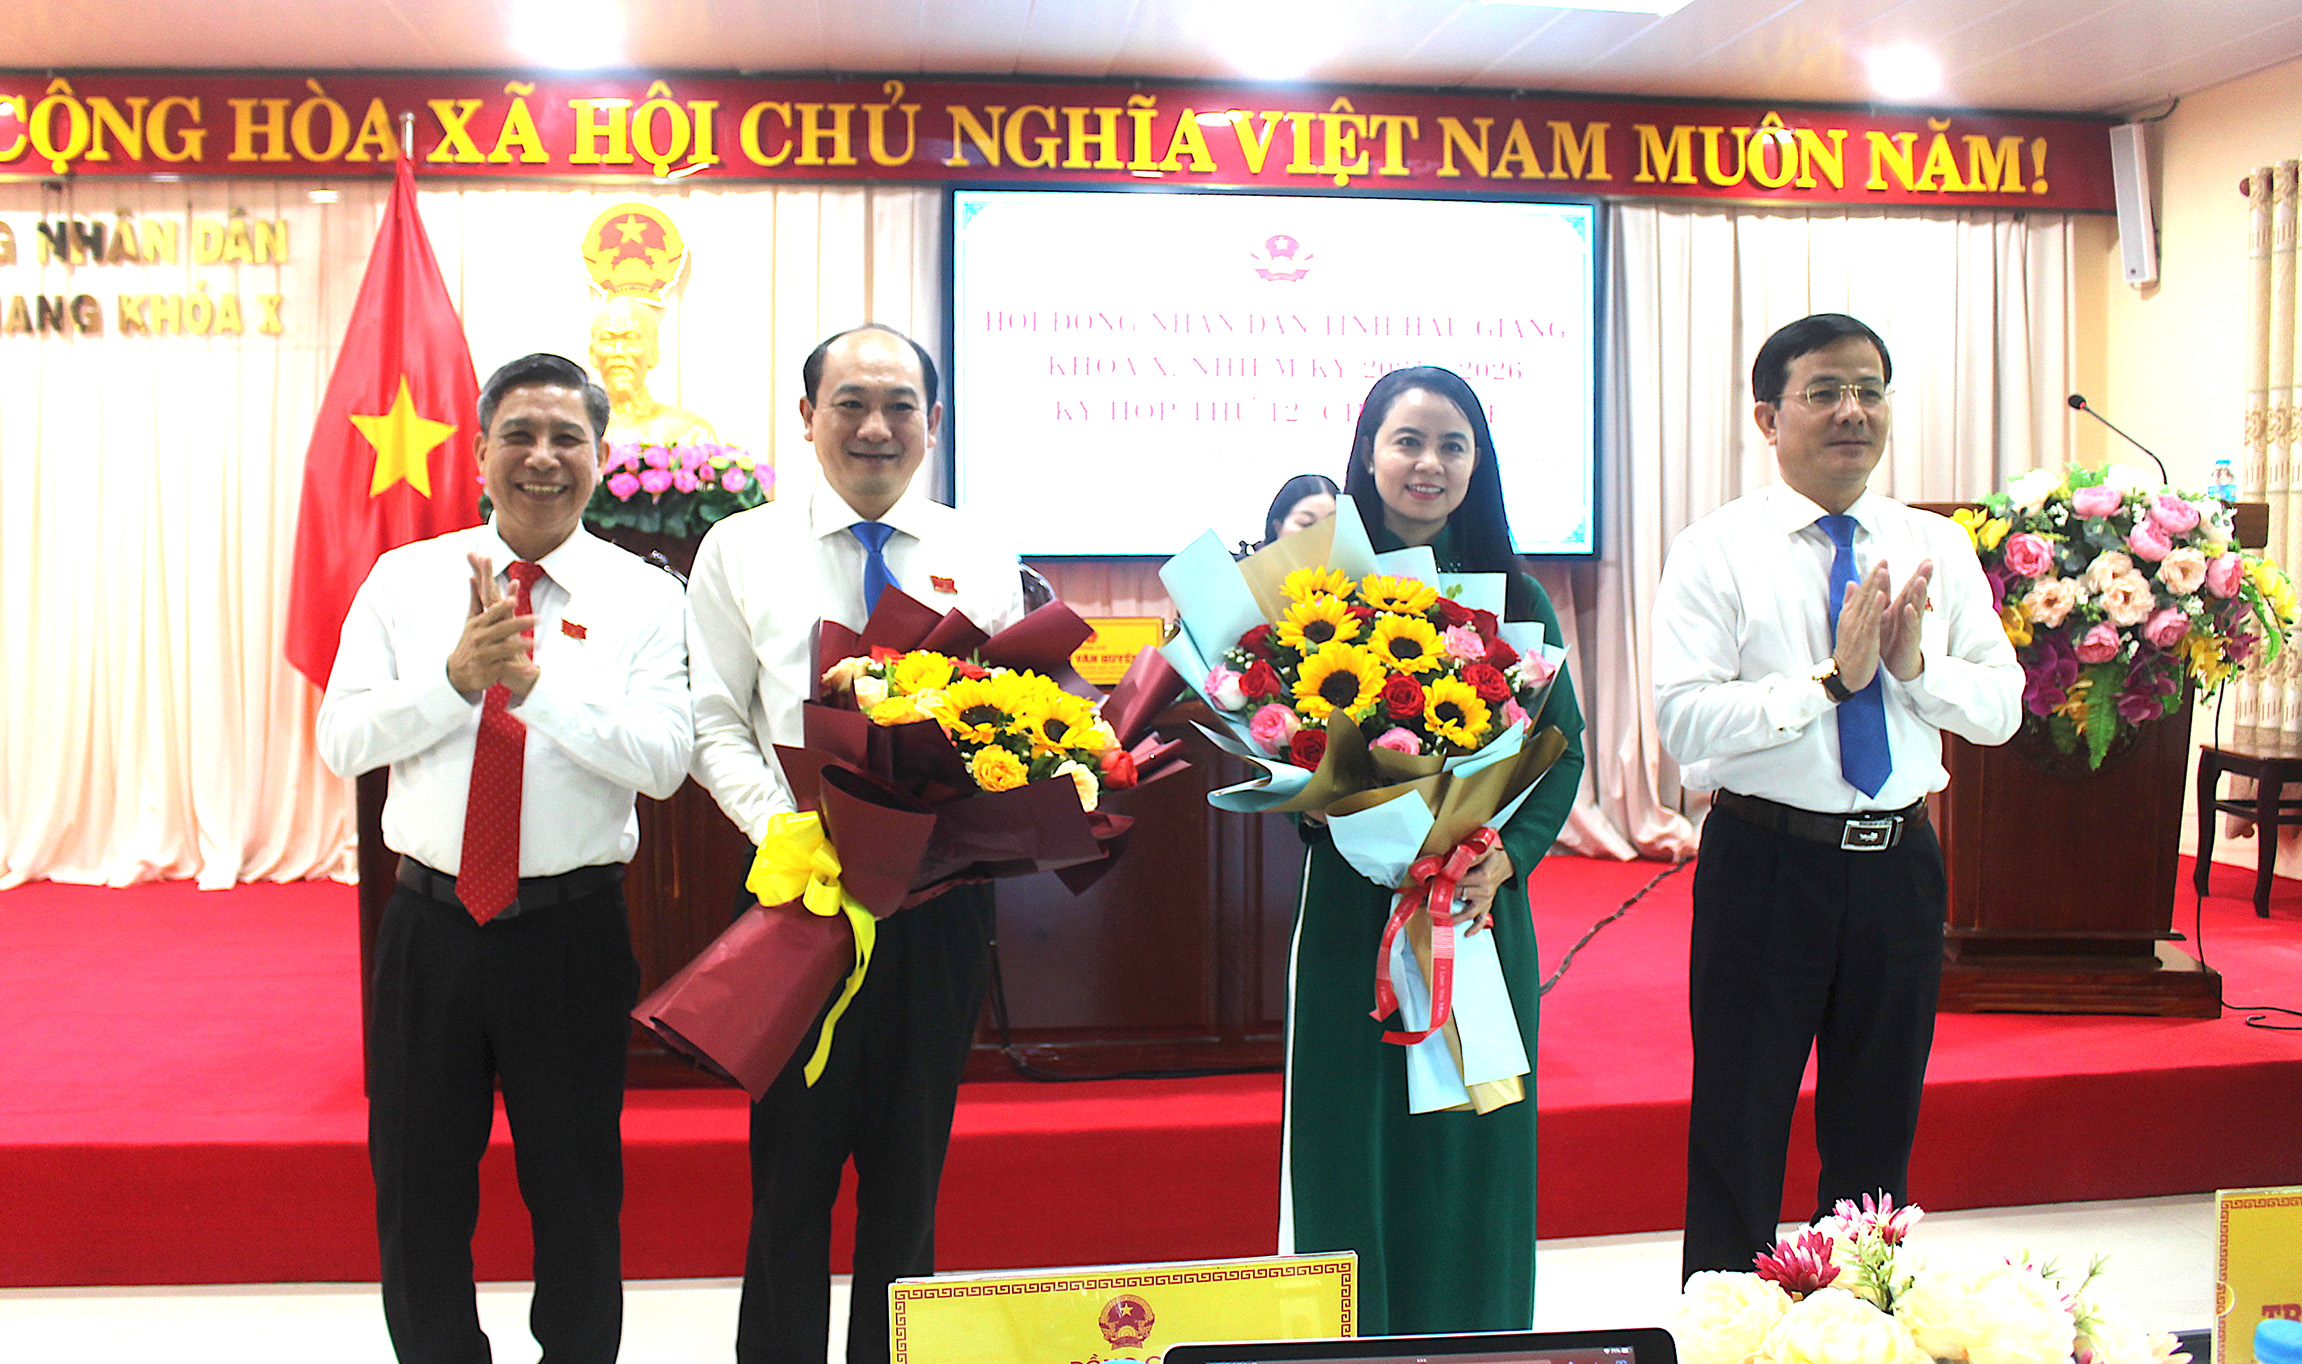 Đồng chí Võ Thị Mỹ Trang và đồng chí Trần Thanh Lâm (giữa) nhận hoa chúc mừng từ lãnh đạo tỉnh.